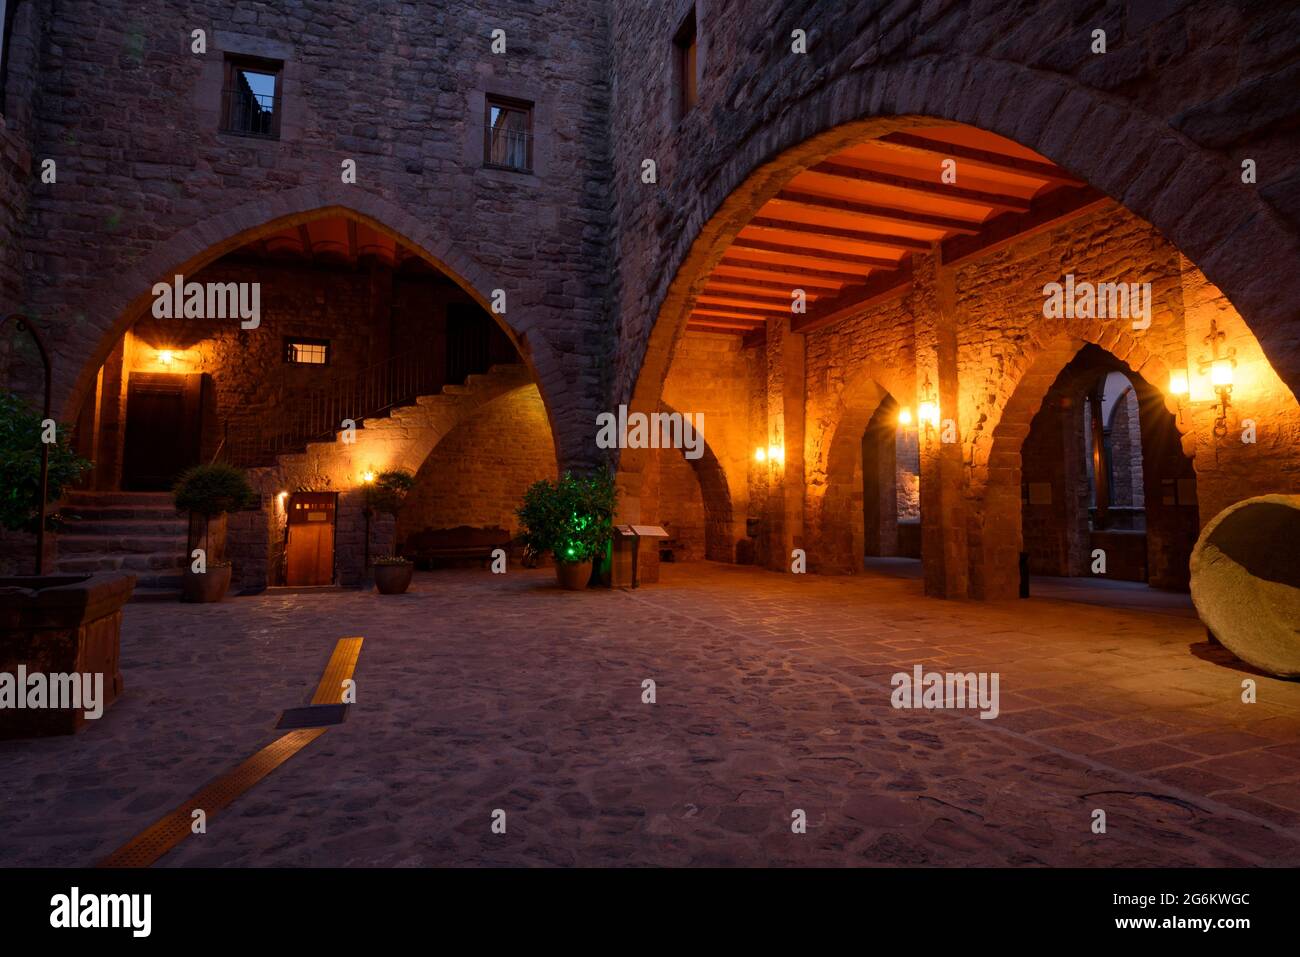 Patio interior del Parador Nacional (hotel de lujo) por la noche, dentro del Castillo de Cardona (Bages, Barcelona, Cataluña, España) Foto de stock